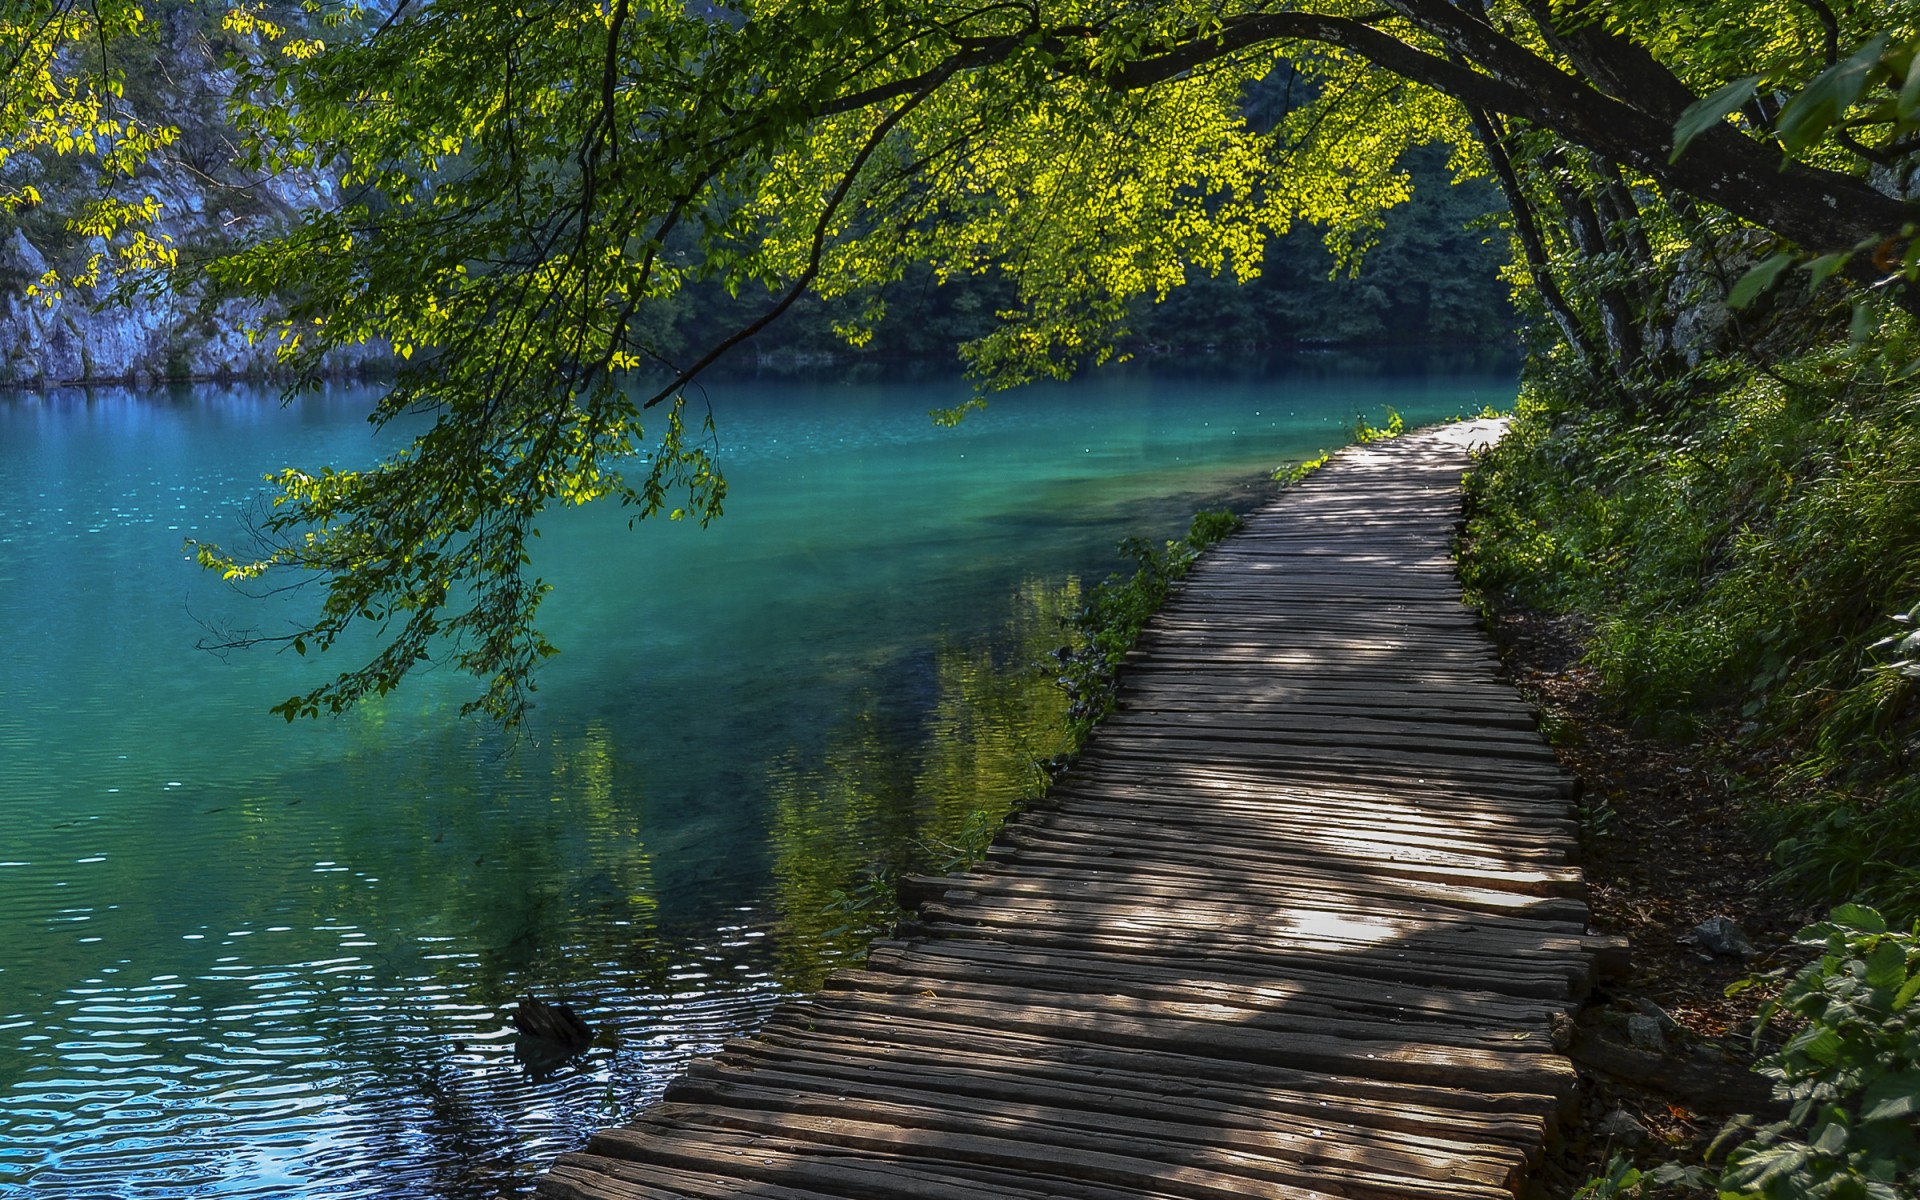 man made, boardwalk, green, lake, path, spring, tree, turquoise